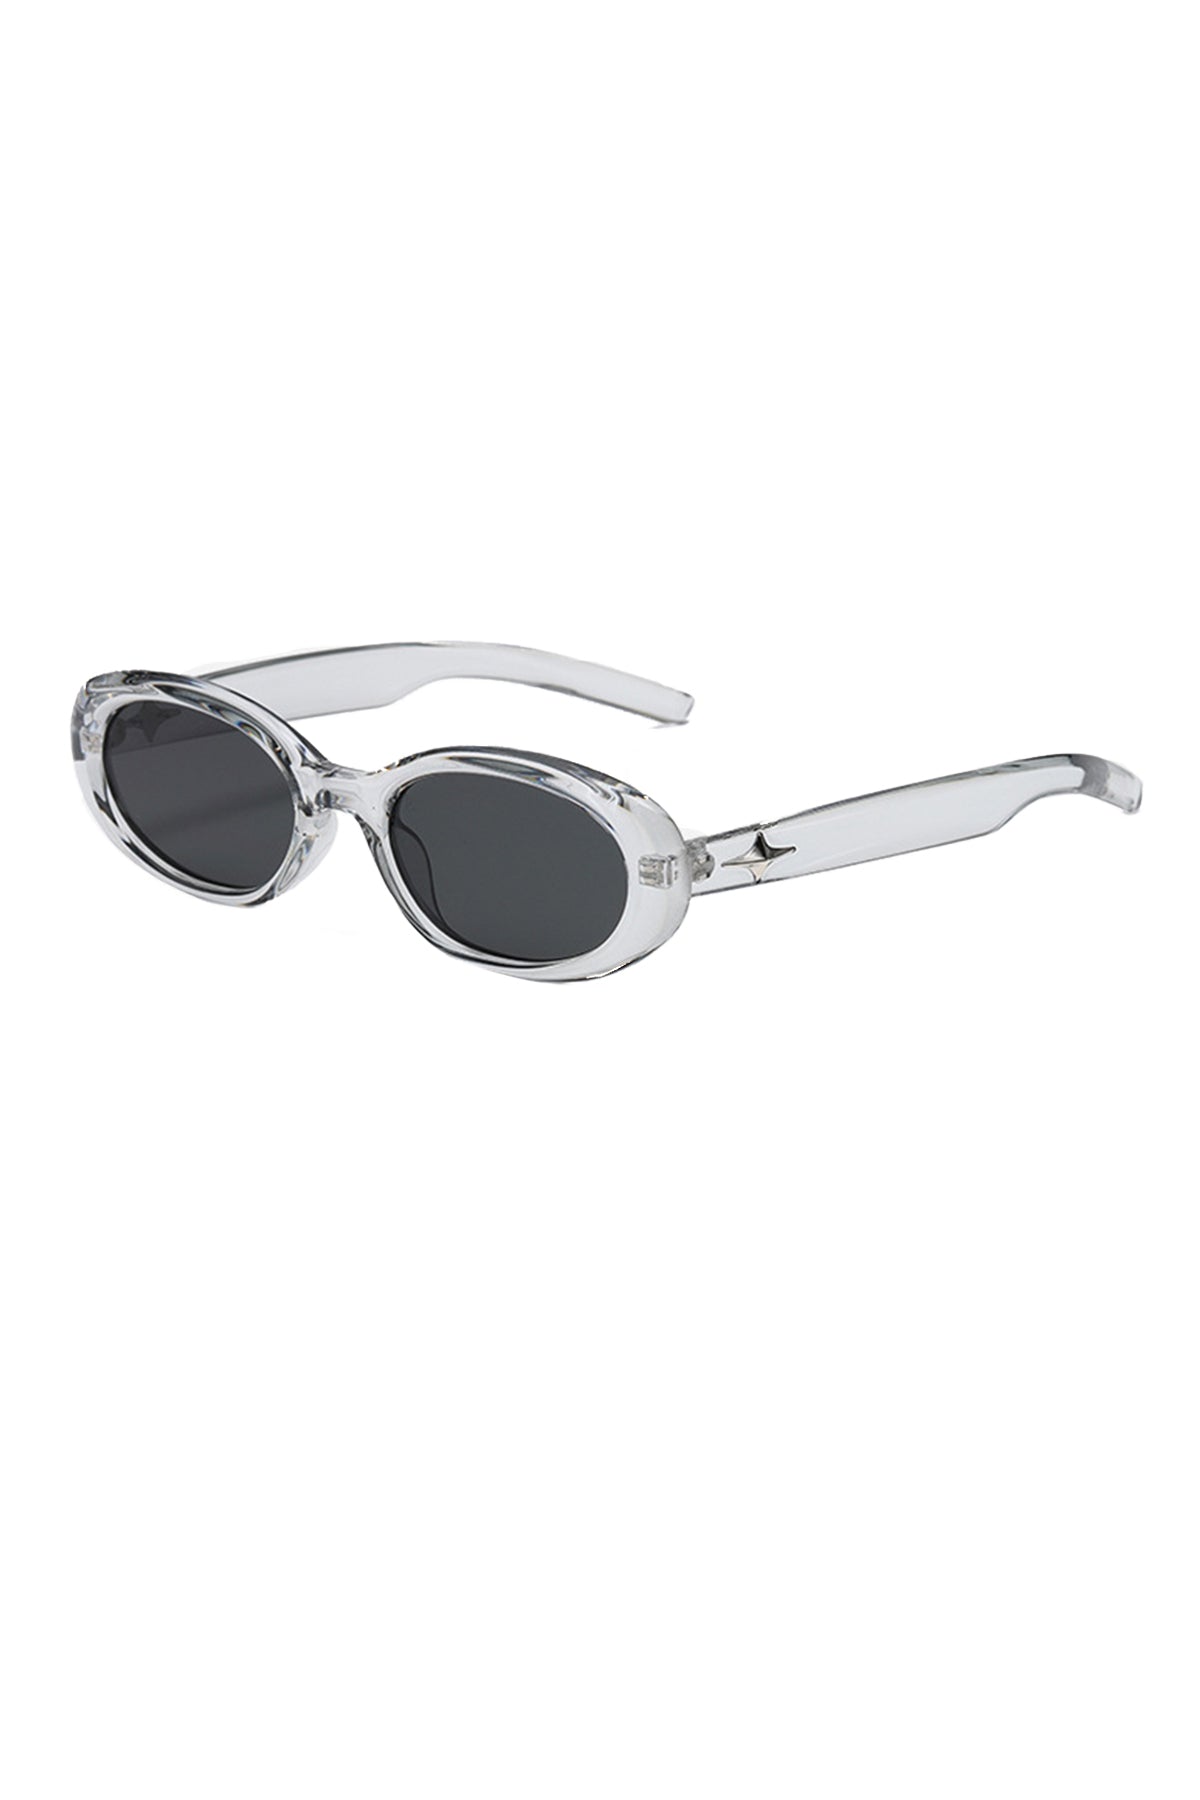 Norton Sunglasses In Grey (4 Left)